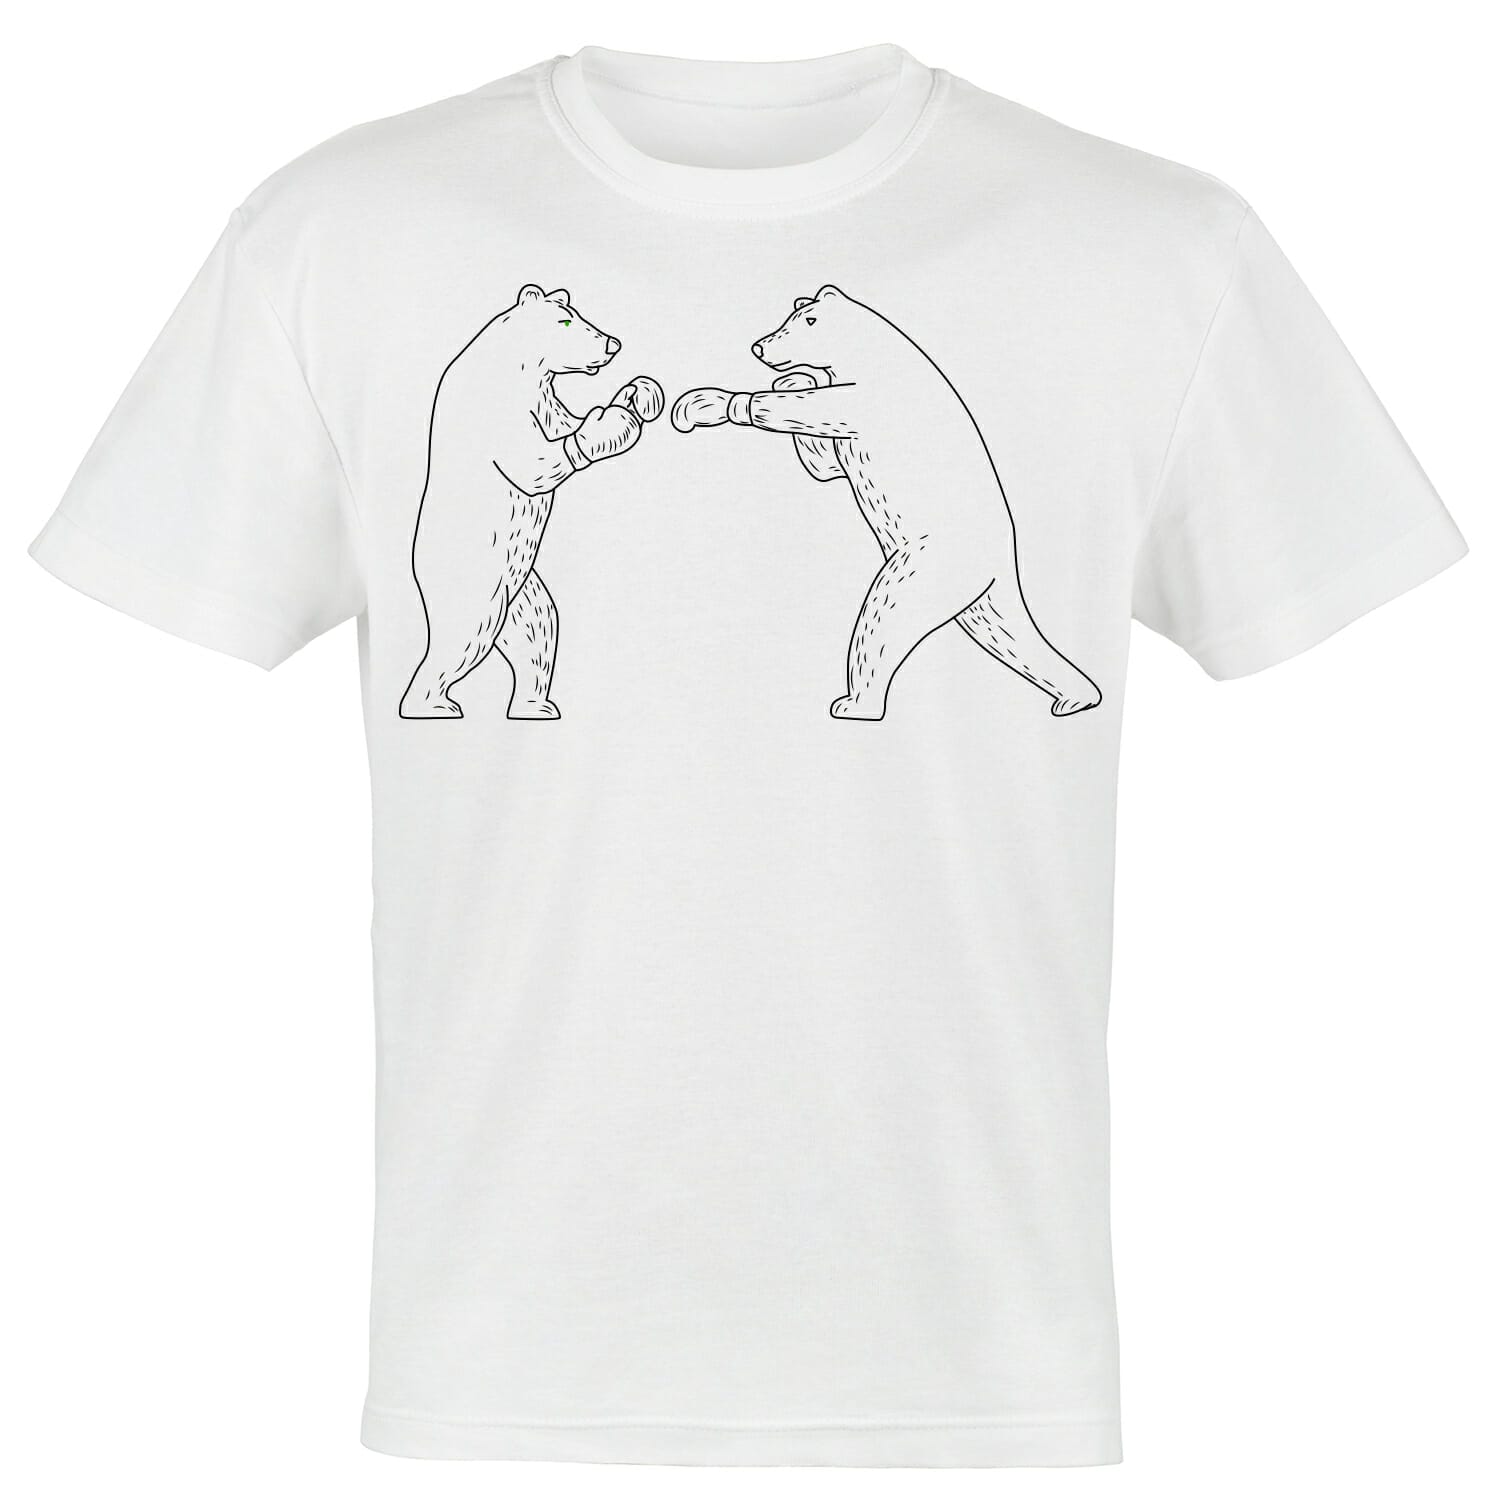 Bears Boxing Tshirt Design